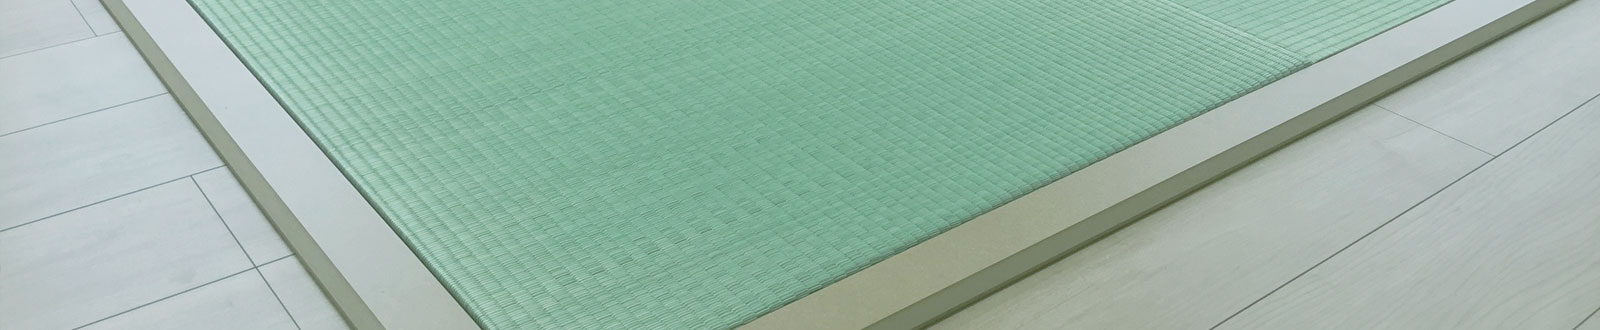 畳床の種類